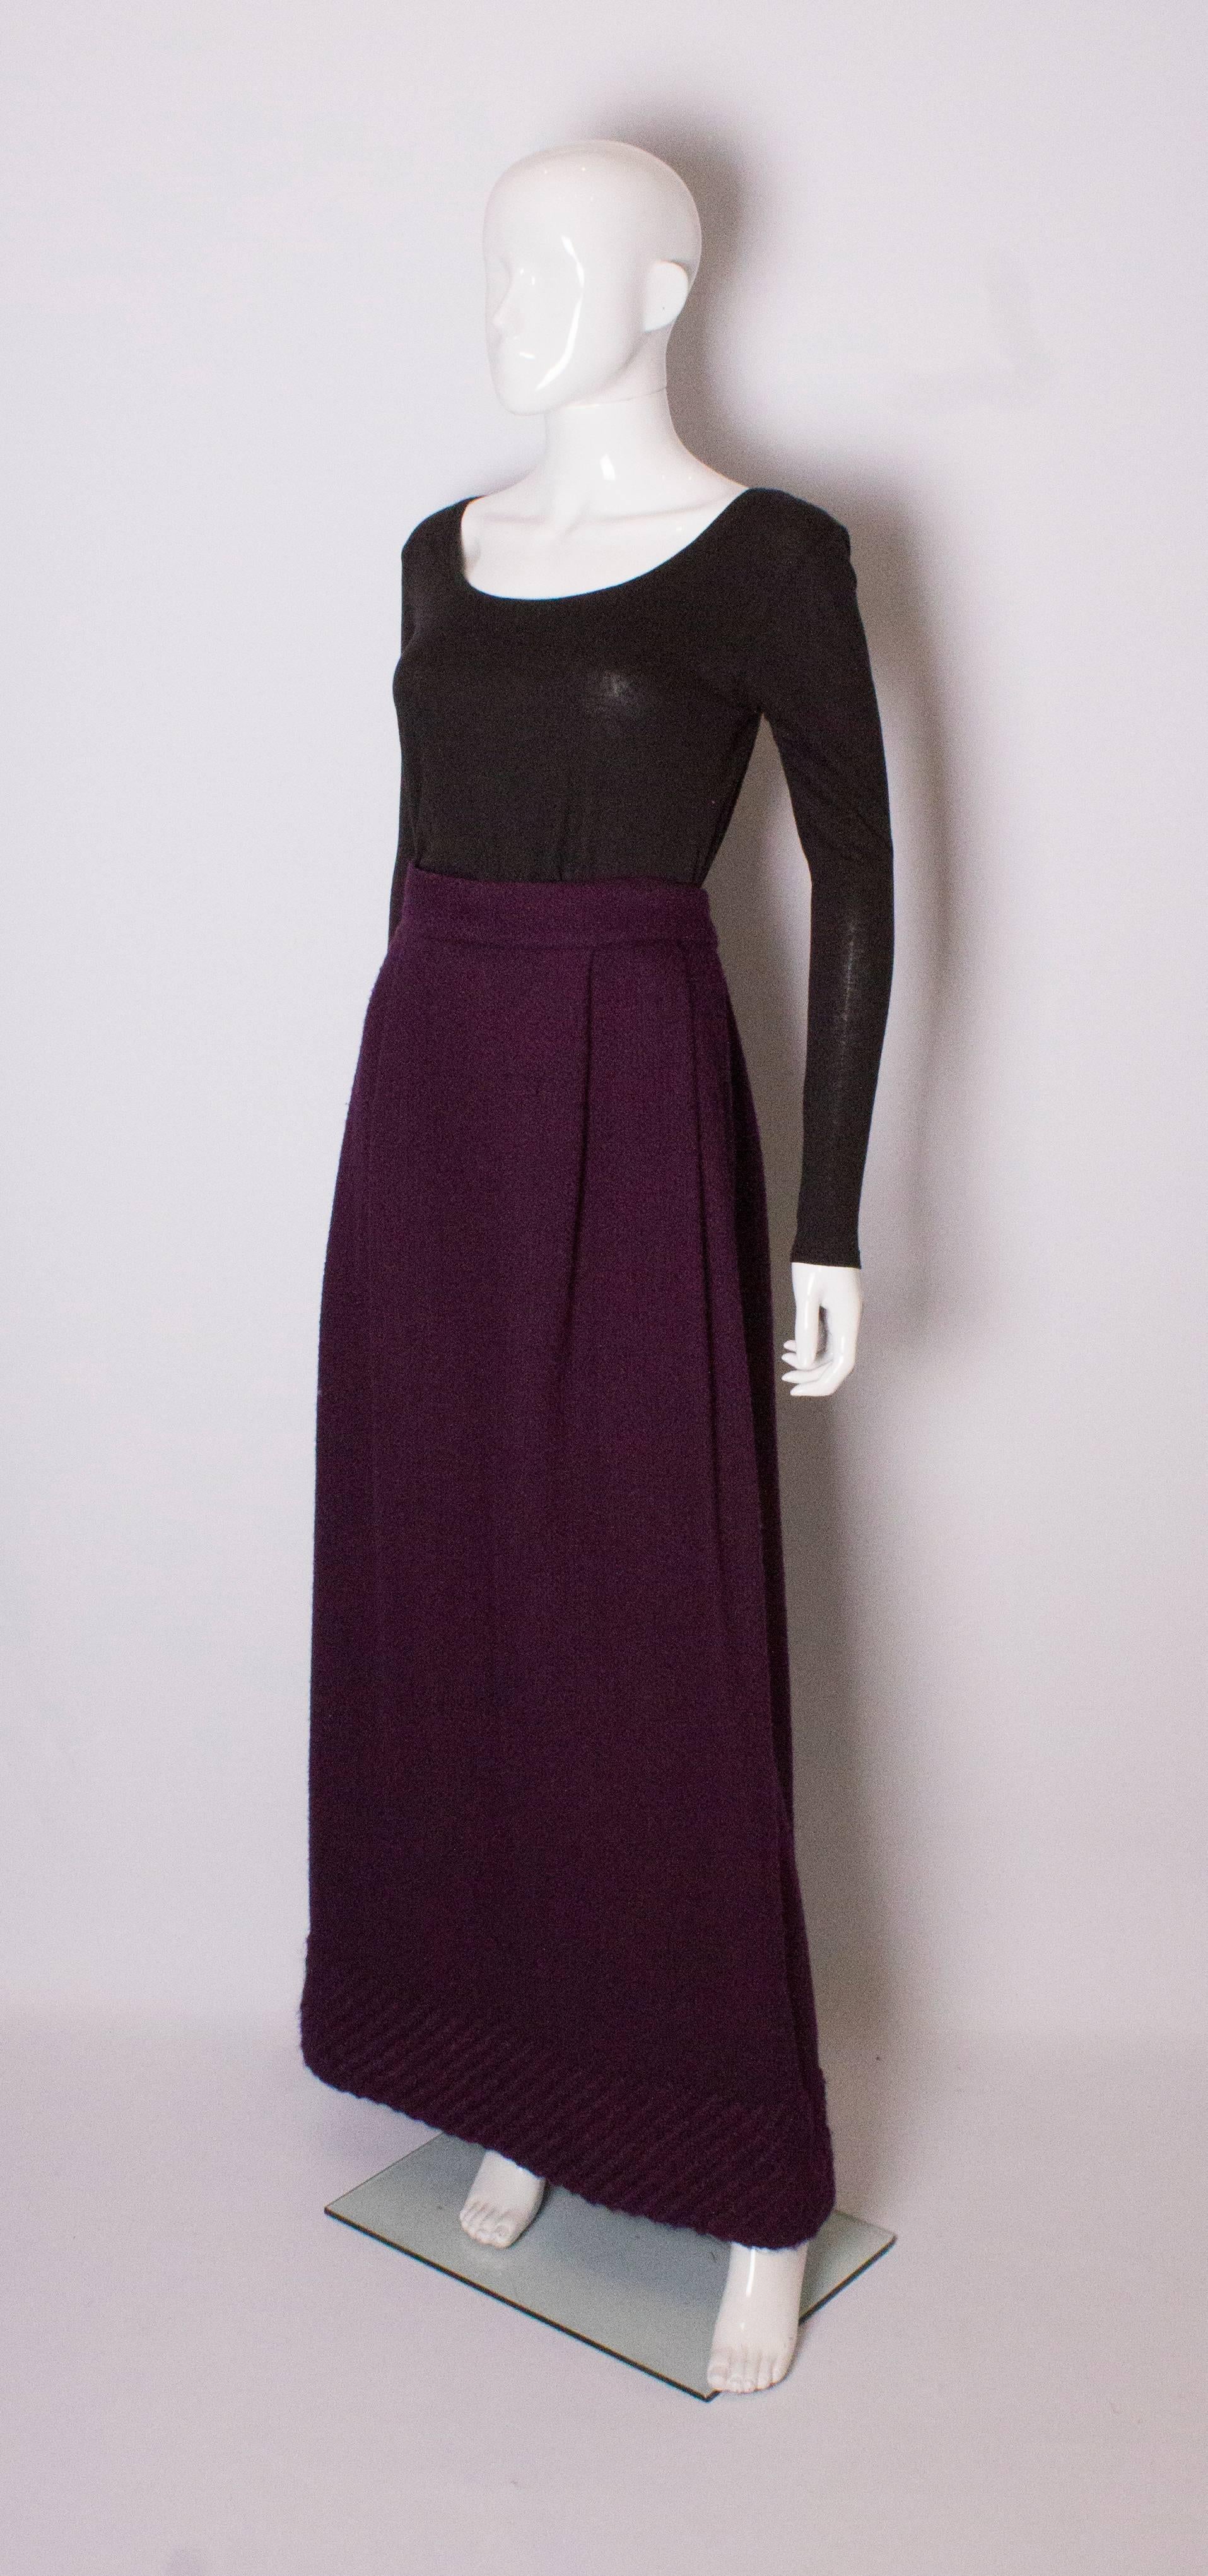 Black Vintage Wool Skirt by Inverhouse